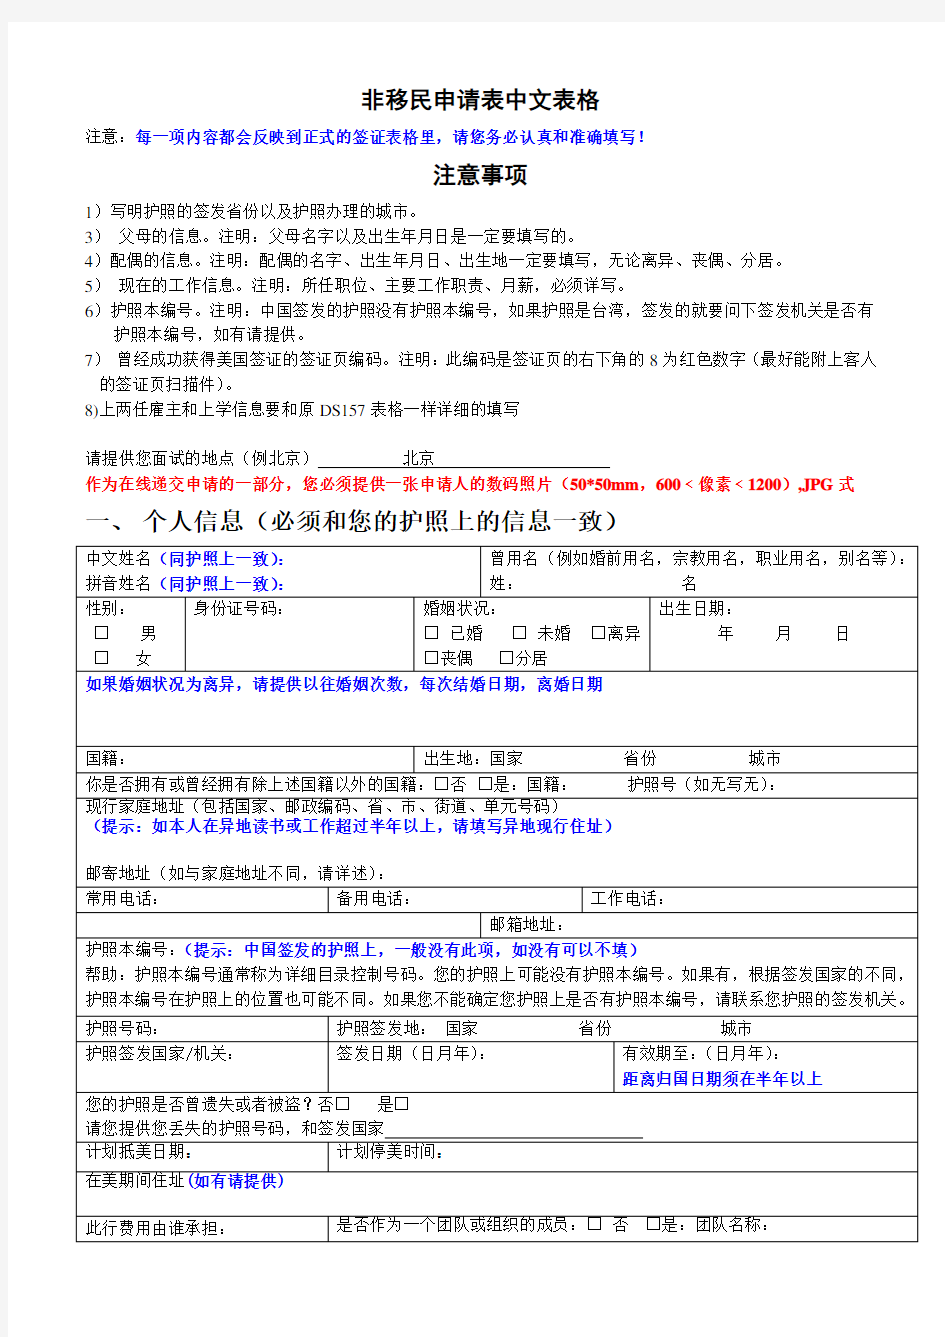 美国 DS160中文信息表 最新中文翻译版